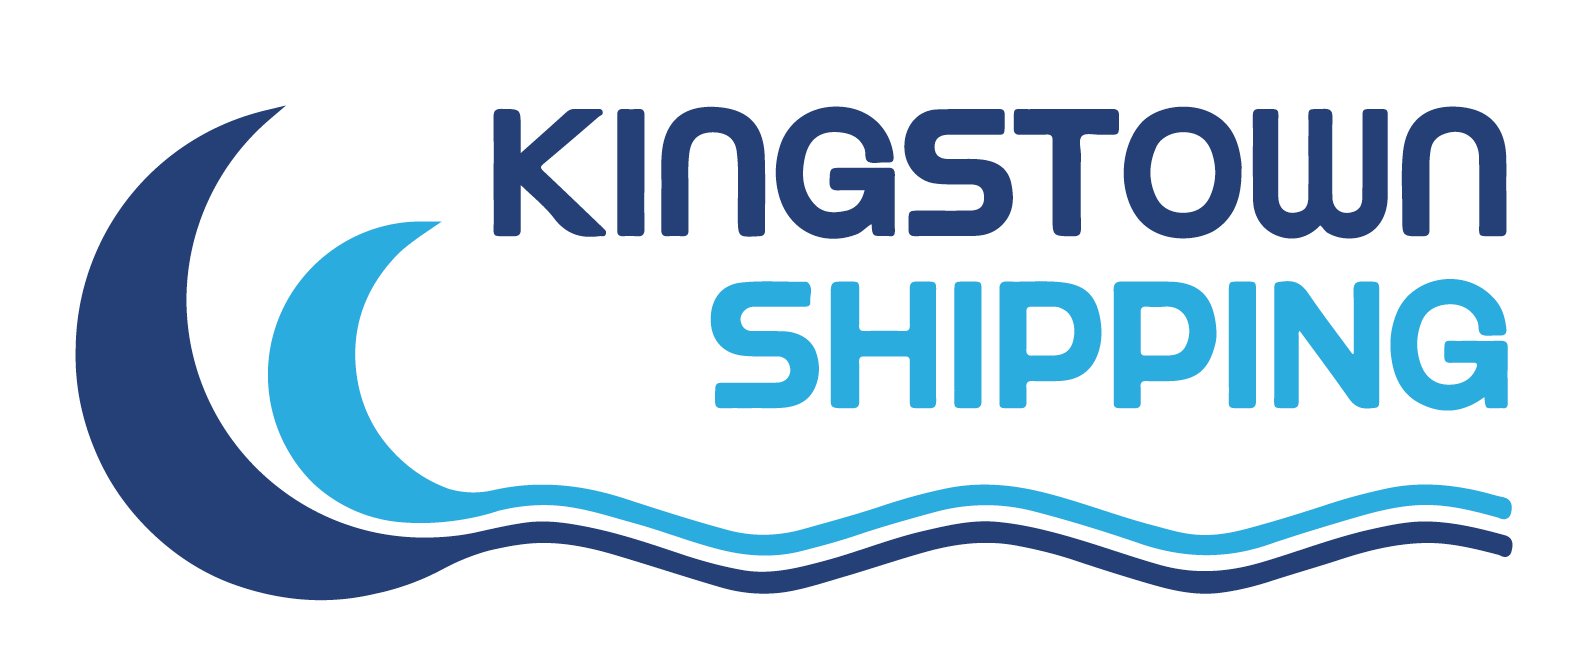 Kingstown logo.png